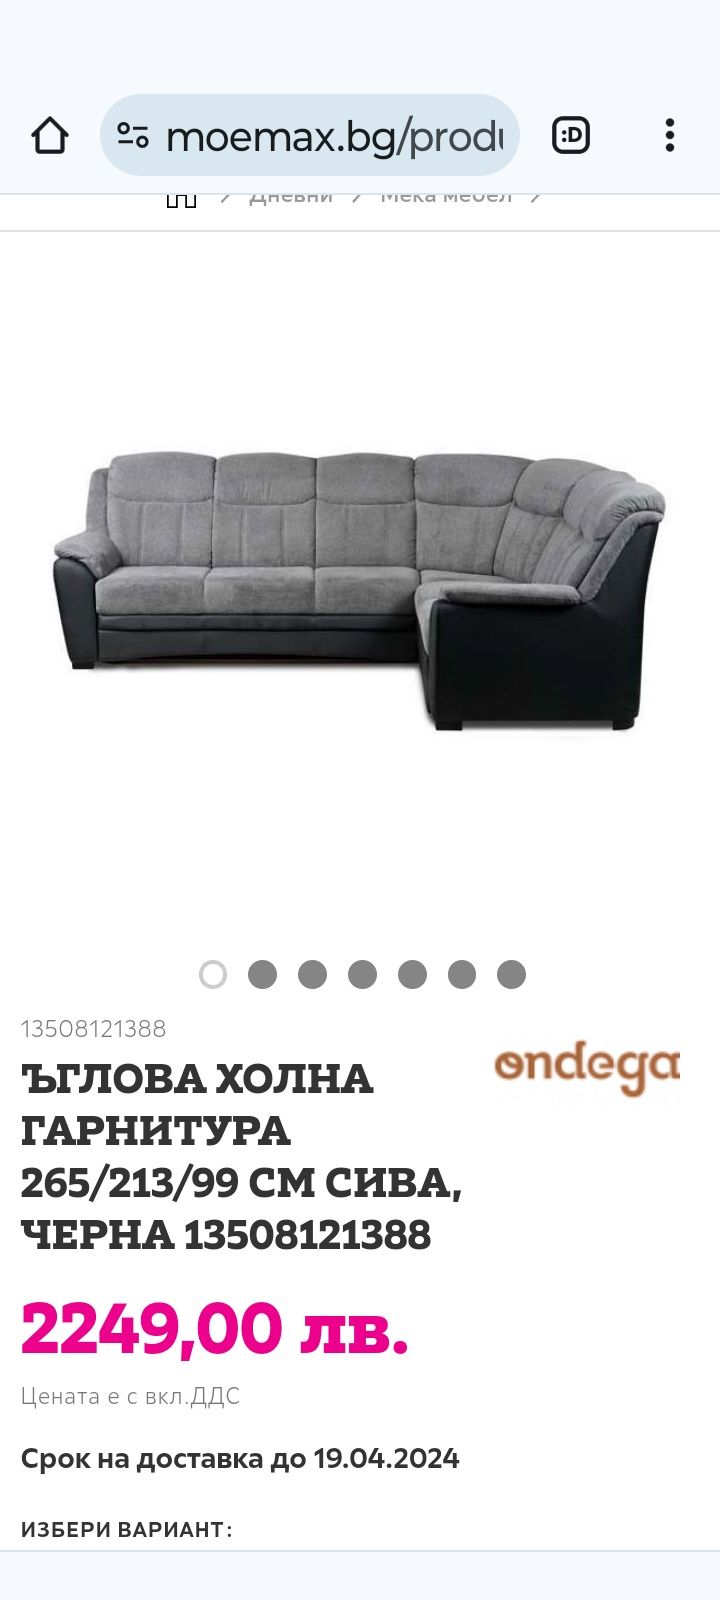 Продаван диван втора употреба